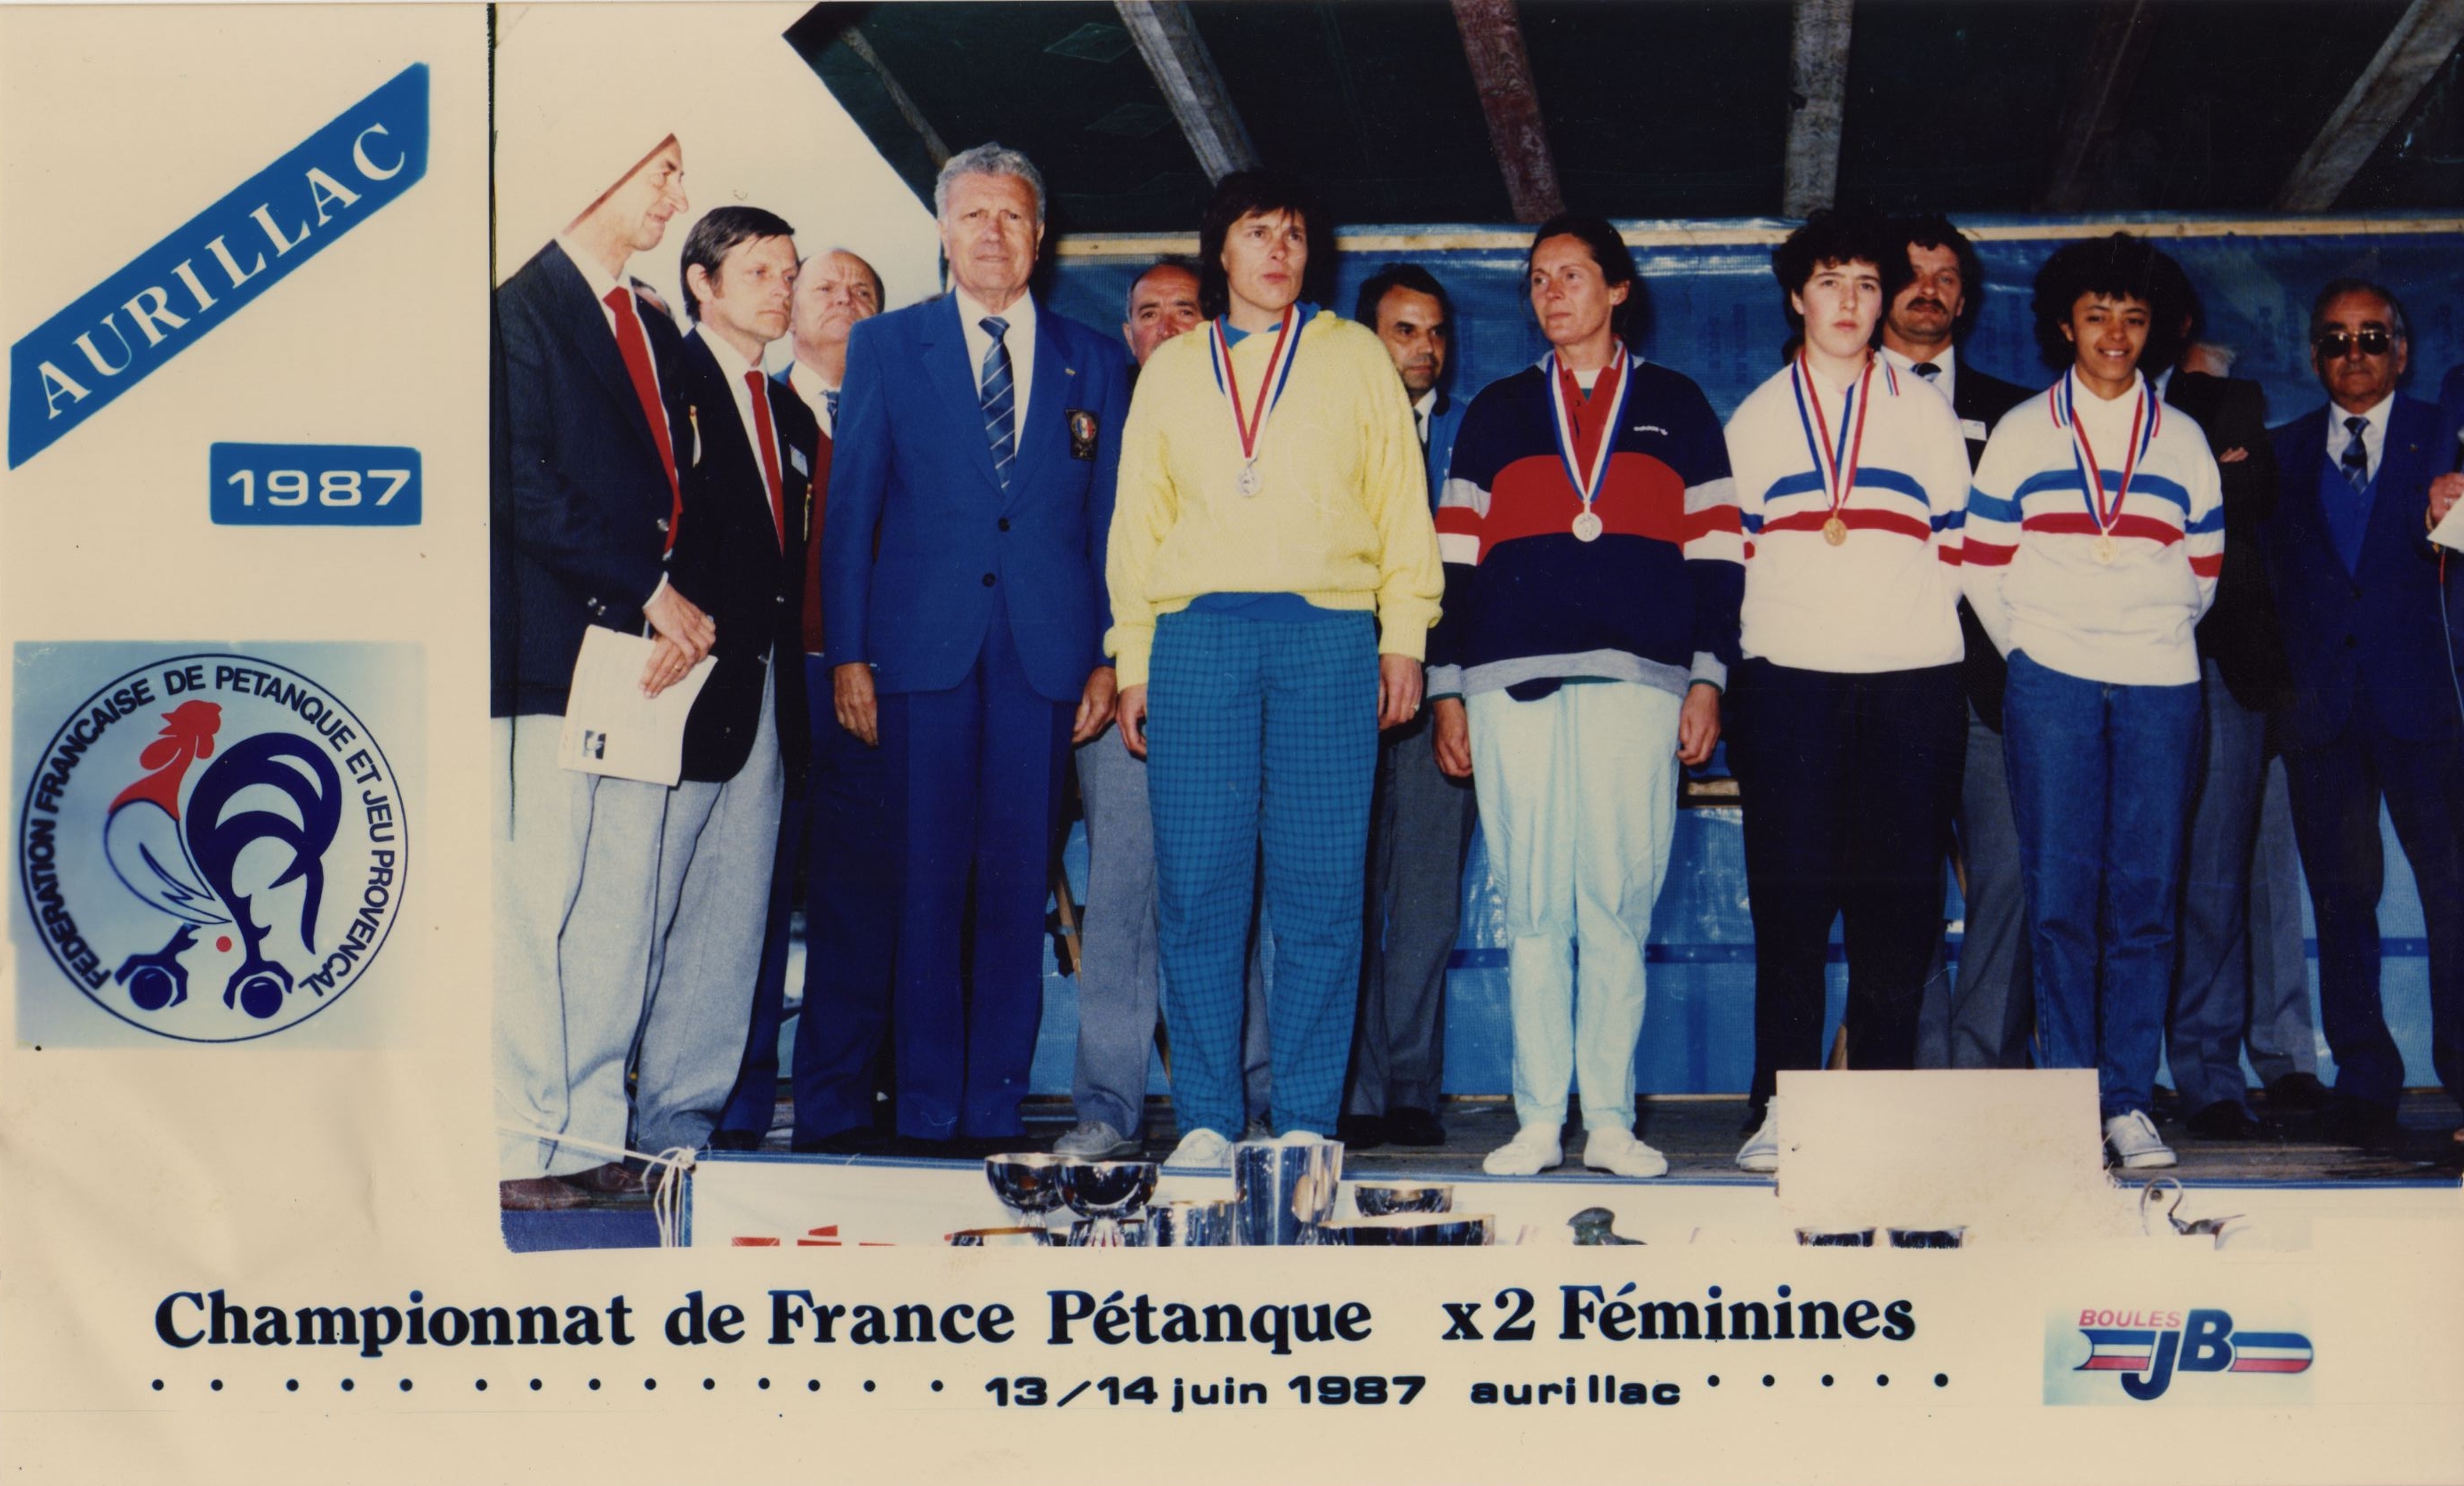 Le podium du championnat de France doublettes féminines 1987